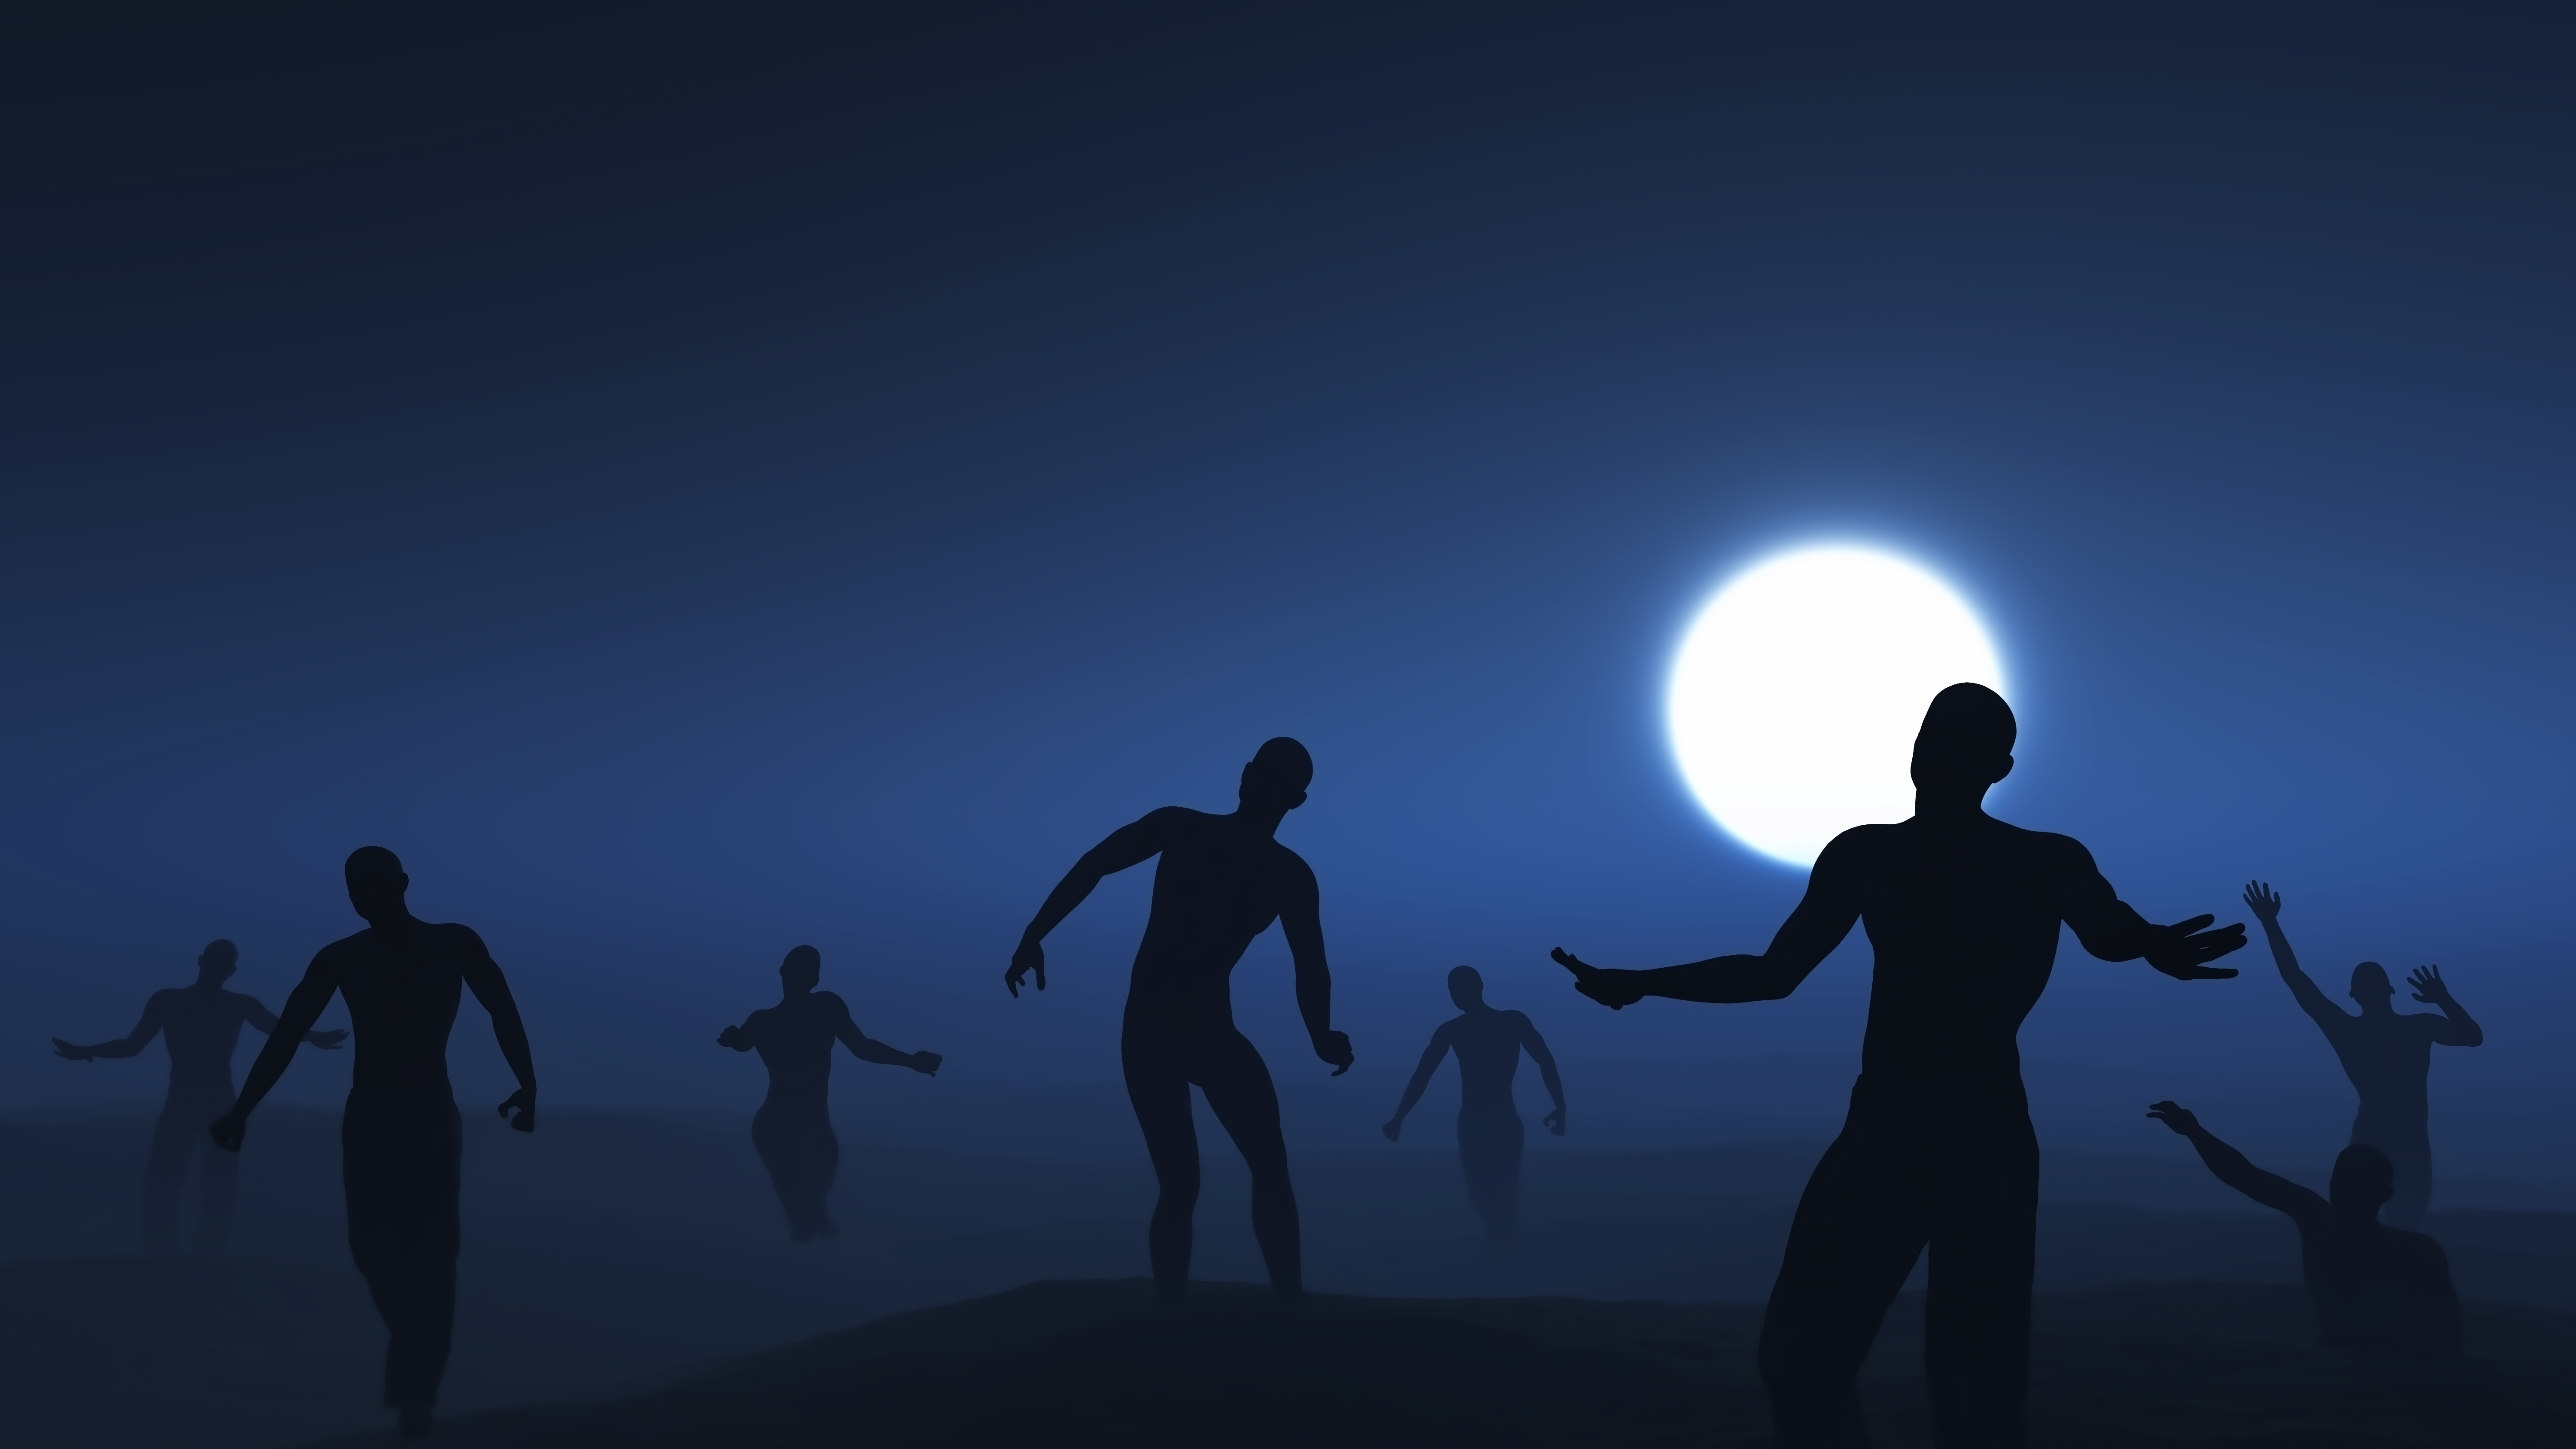 3D landscape of spooky walking zombies